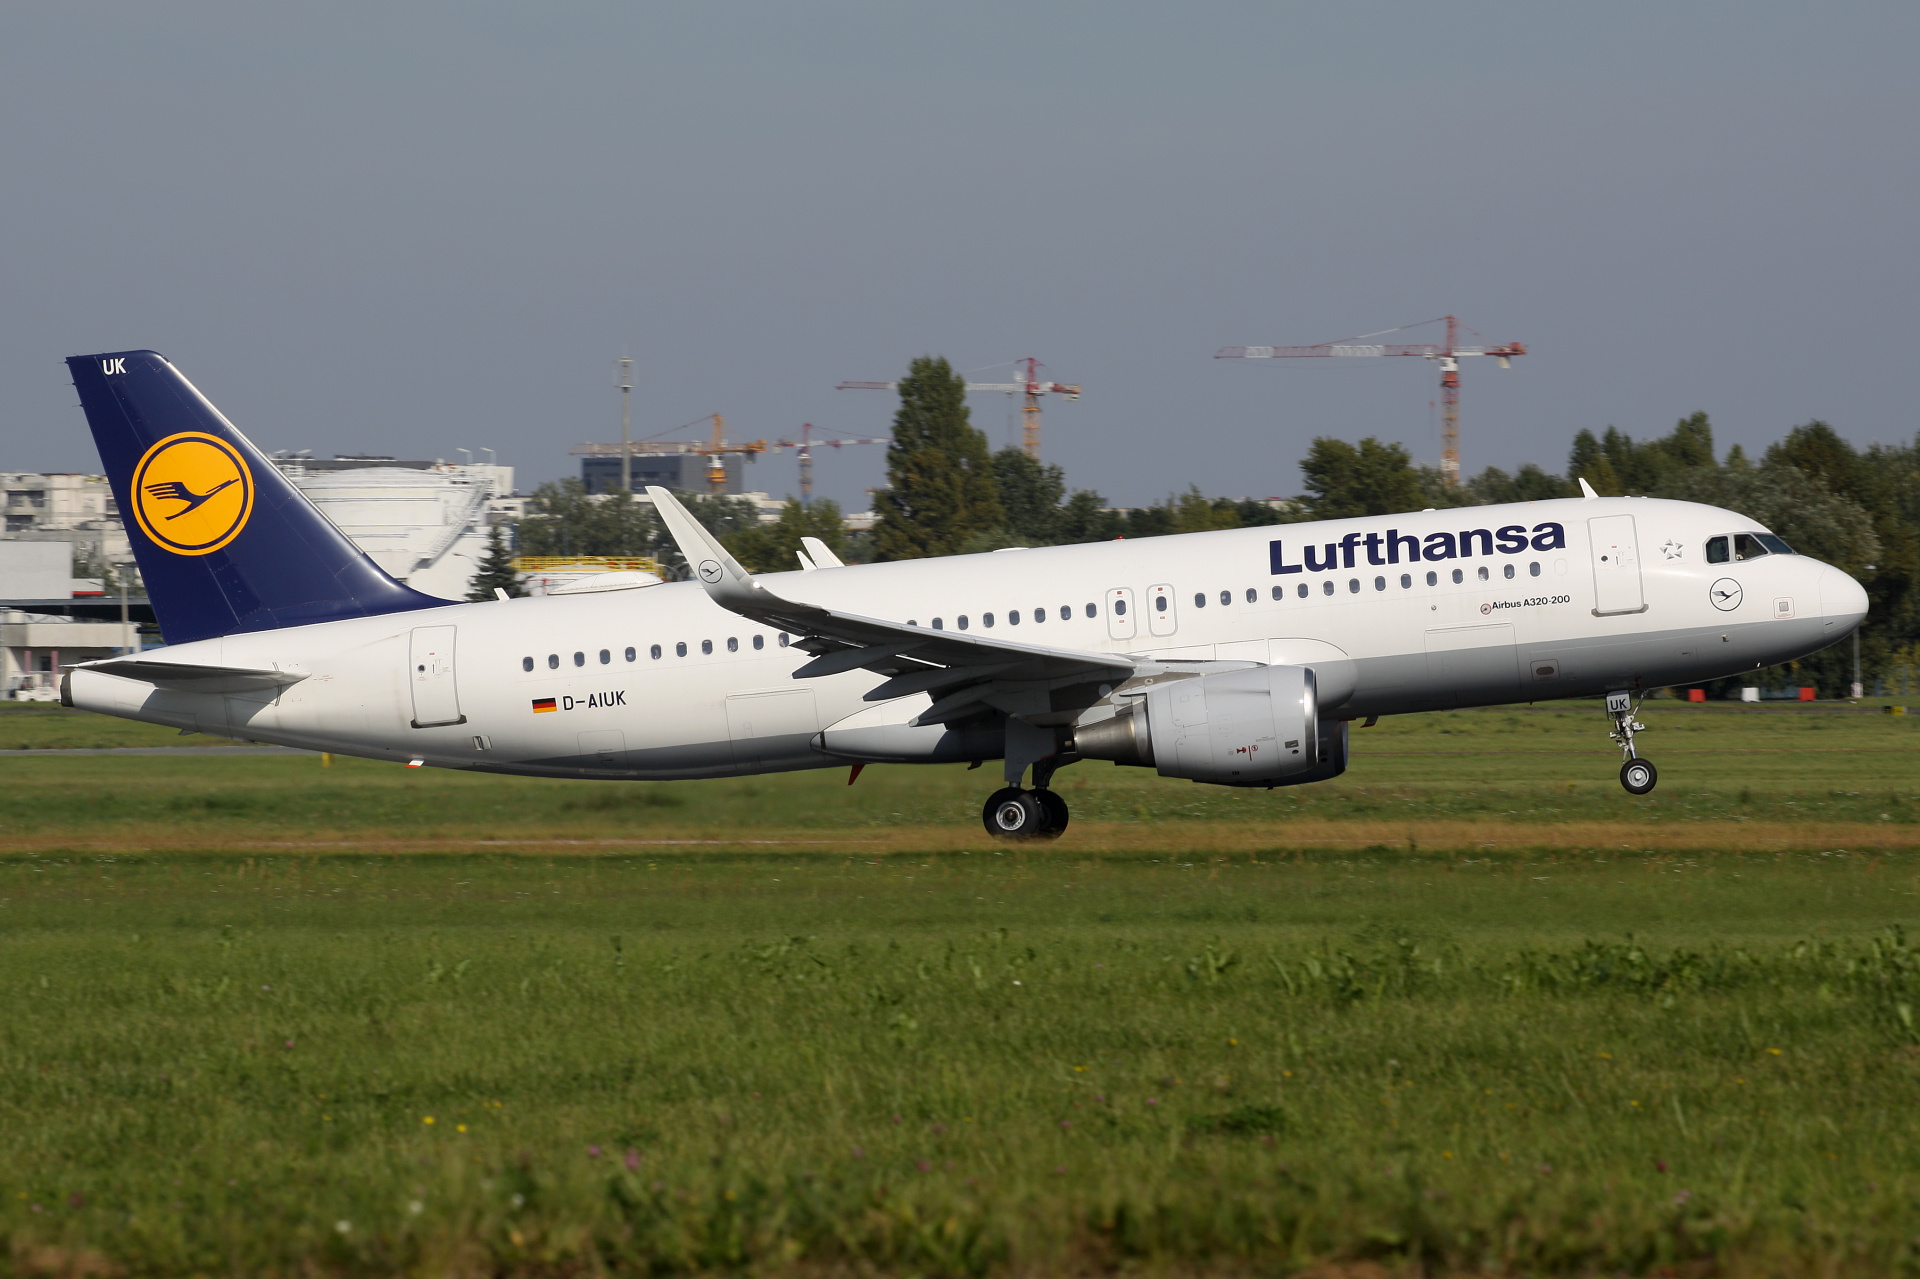 D-AIUK (Aircraft » EPWA Spotting » Airbus A320-200 » Lufthansa)